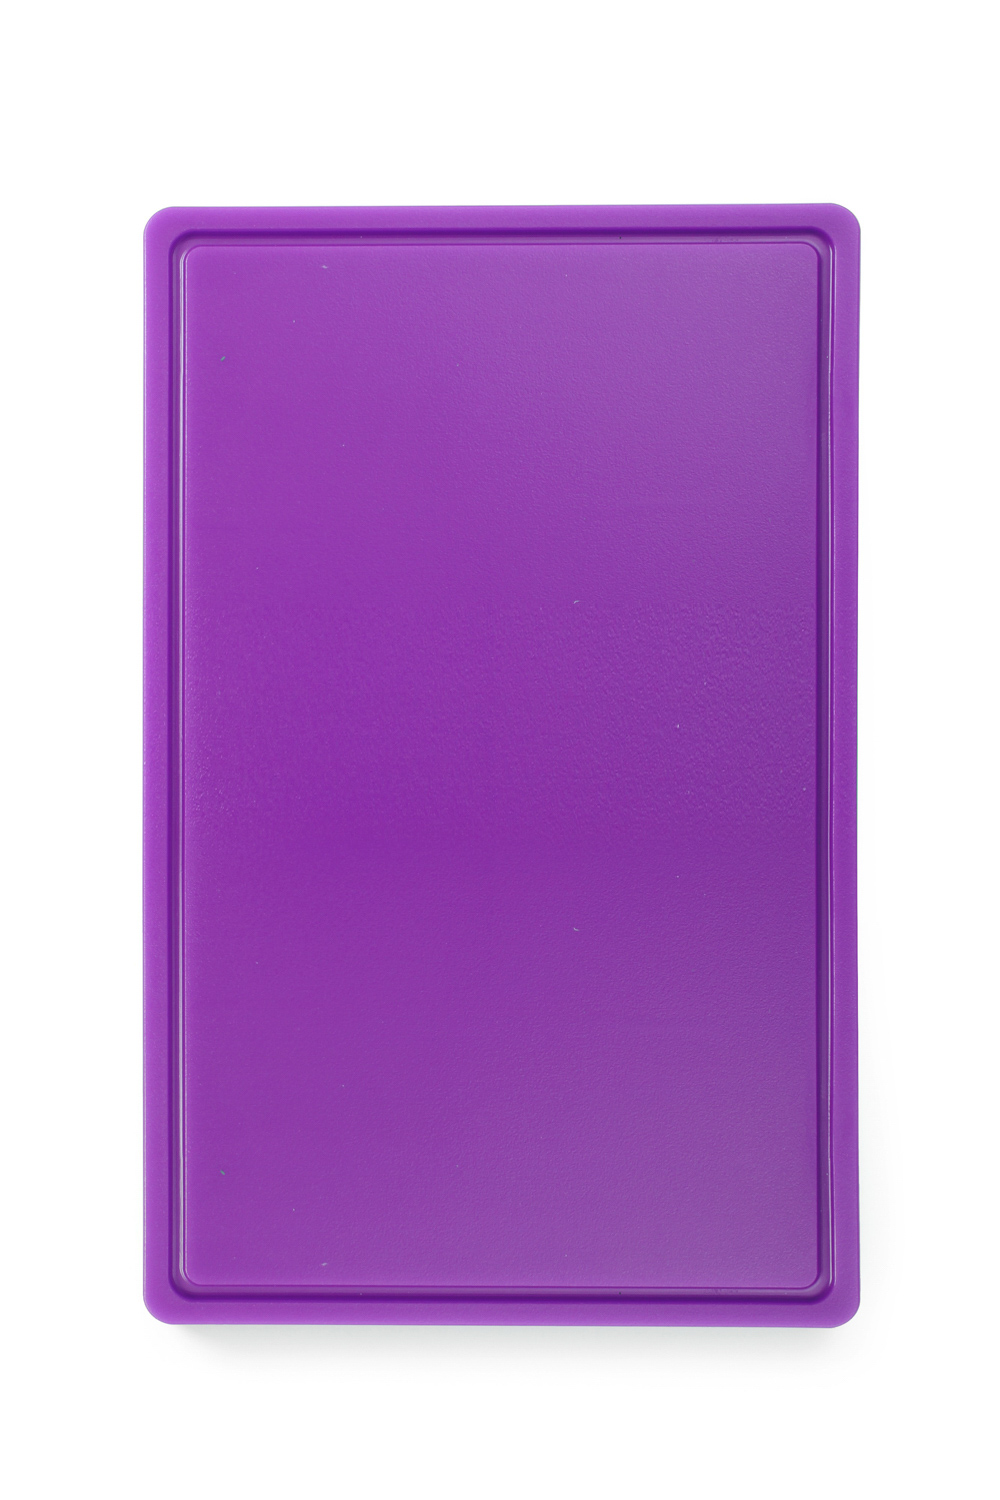 HENDI Schneidbretter HACCP Gastronorm 1/1 - Farbe: violett - für antiallergisch - 530x325x(H)15 mm